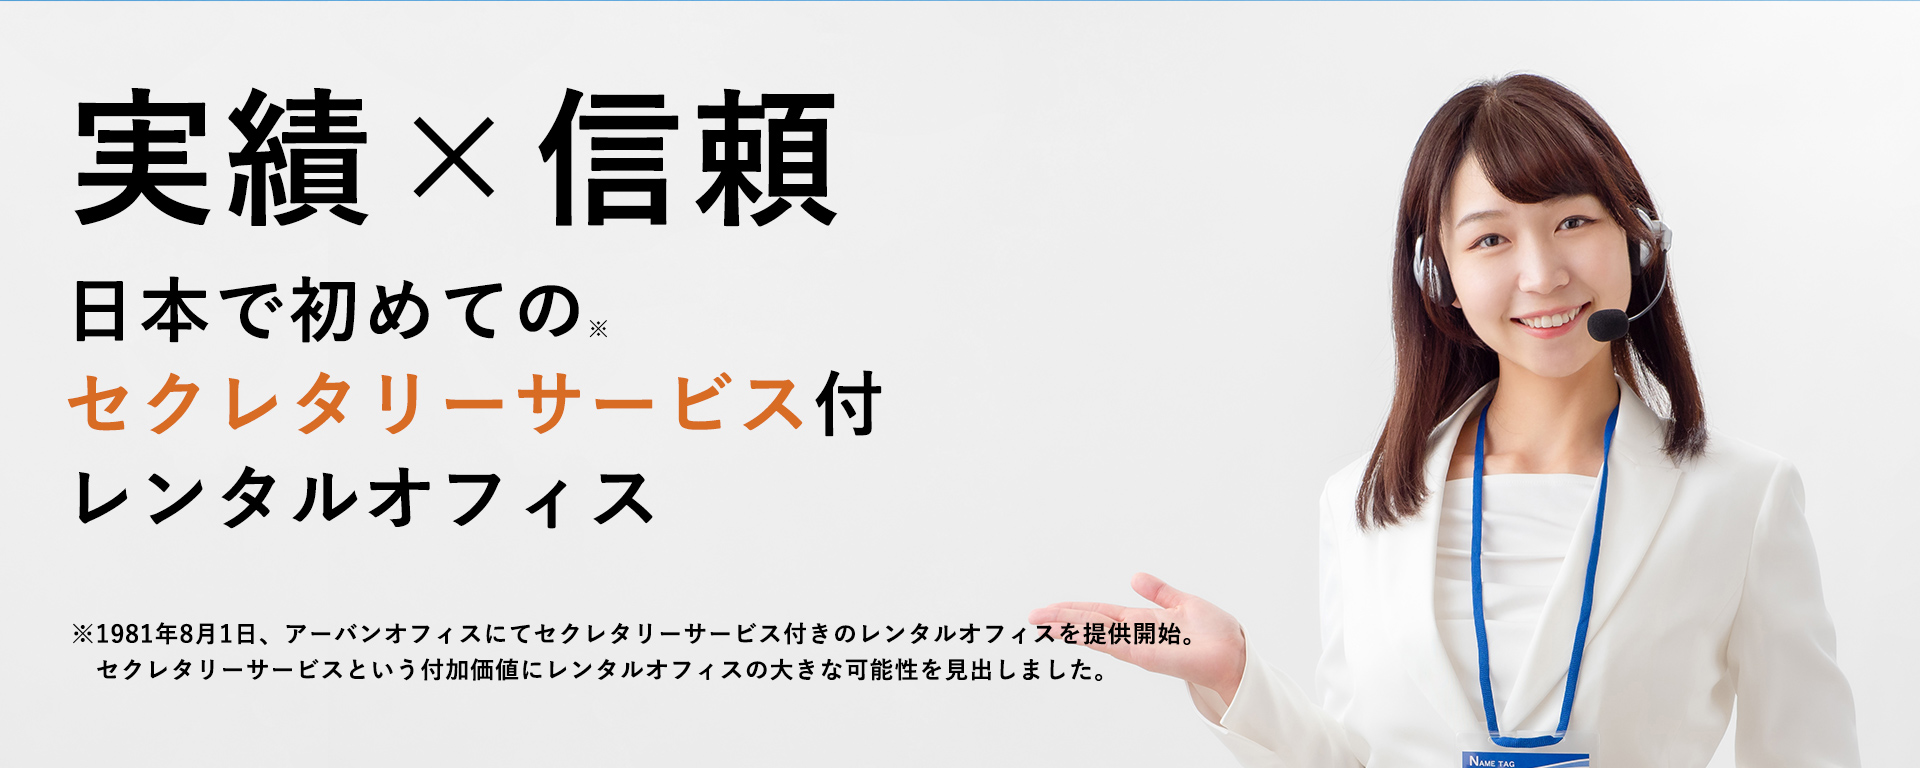 信頼と実績｜日本で初めてのセクレタリーサービス付きレンタルオフィス